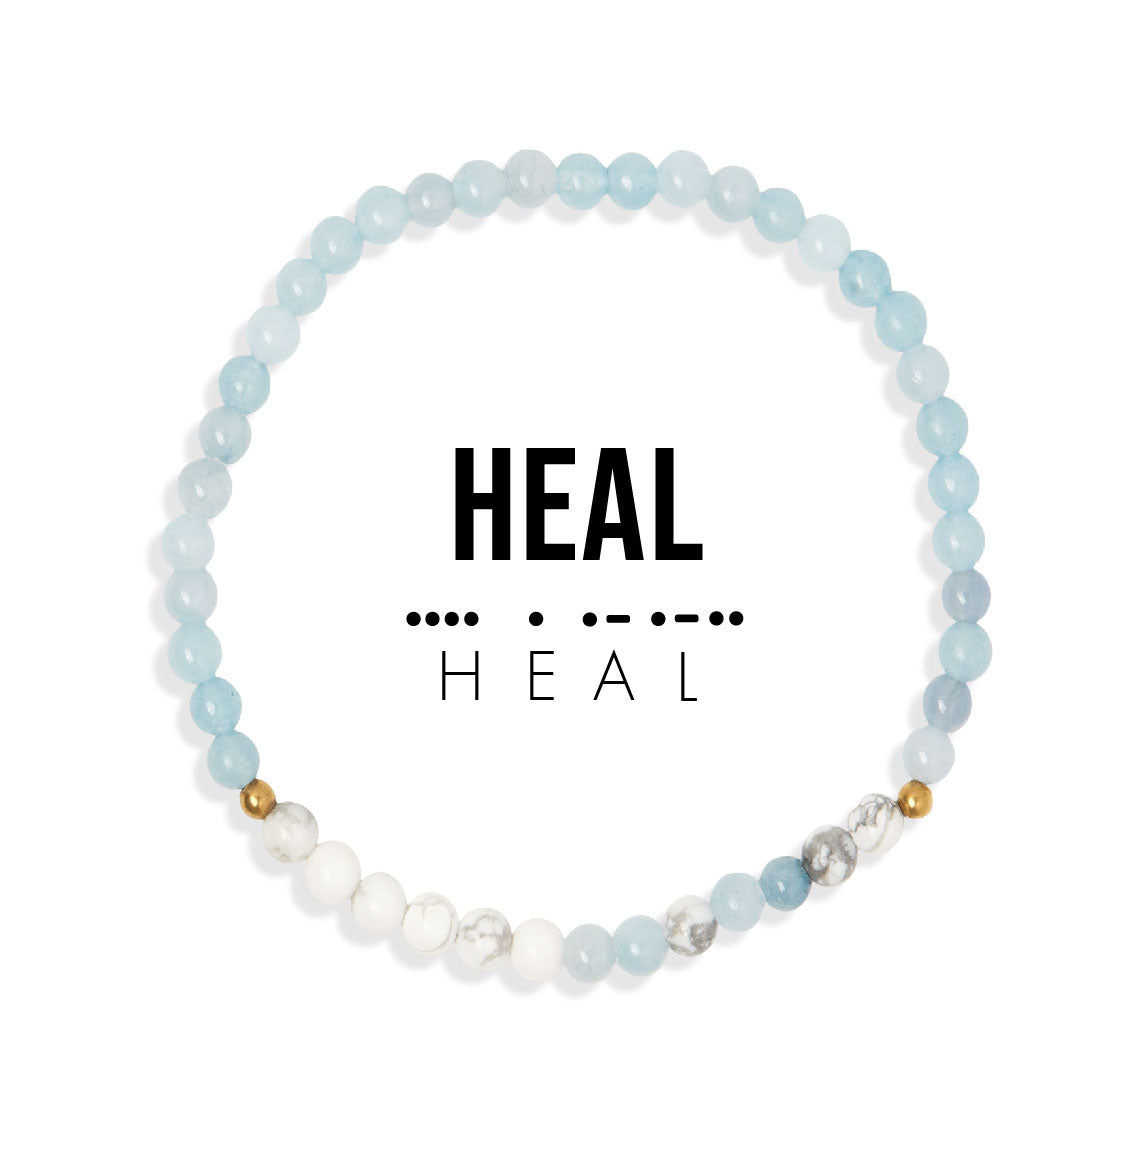 Healing Bracelets: Trust – Prevention is Key